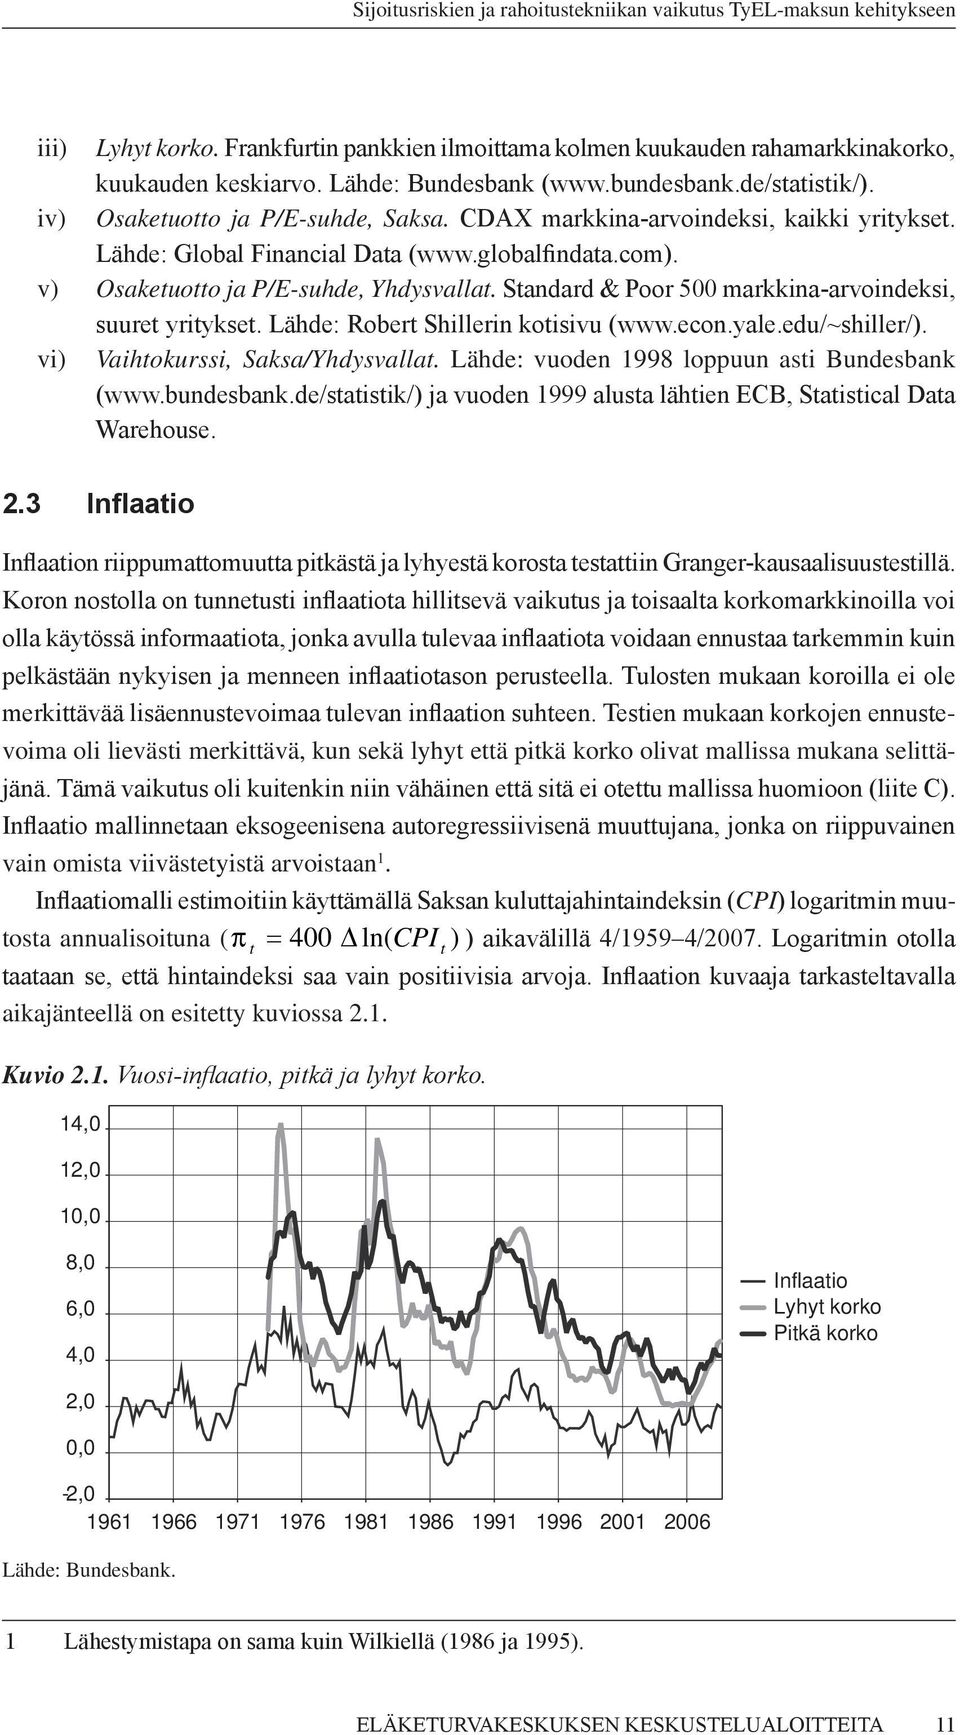 Sandard & Poor 500 markkina-arvoindeksi, suure yriykse. Lähde: Rober Shillerin koisivu (www.econ.yale.edu/~shiller/). vi) Vaihokurssi, Saksa/Yhdysvalla. Lähde: vuoden 1998 loppuun asi Bundesbank (www.